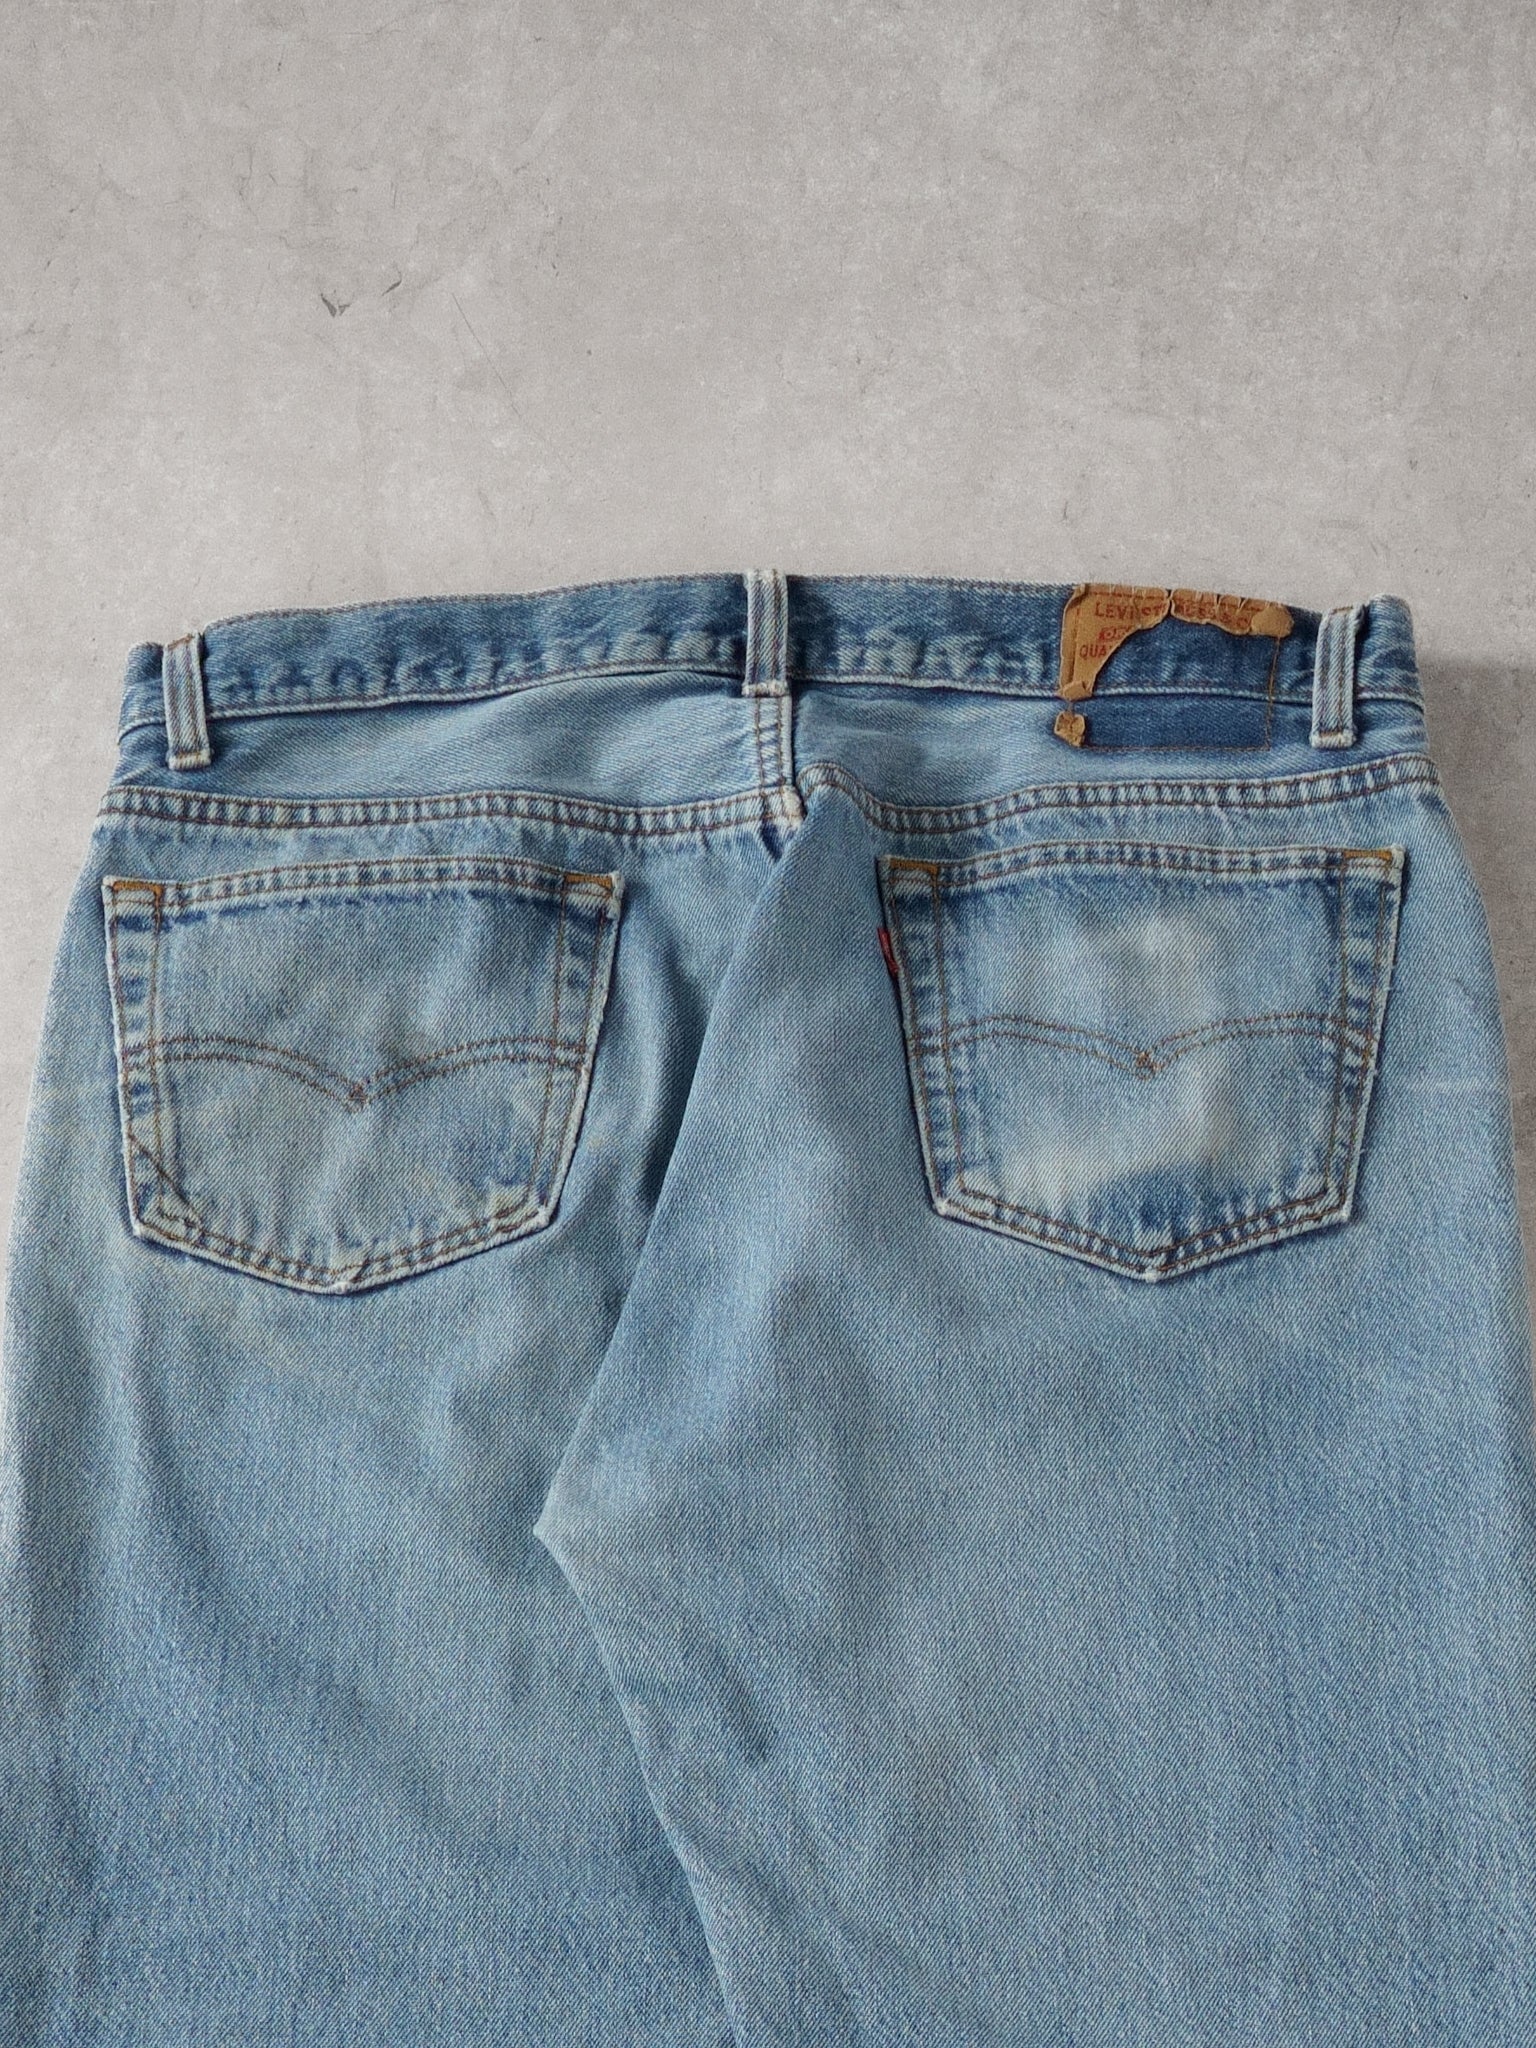 Vintage 90s Light Blue Levi's Denim Jeans (34x30)